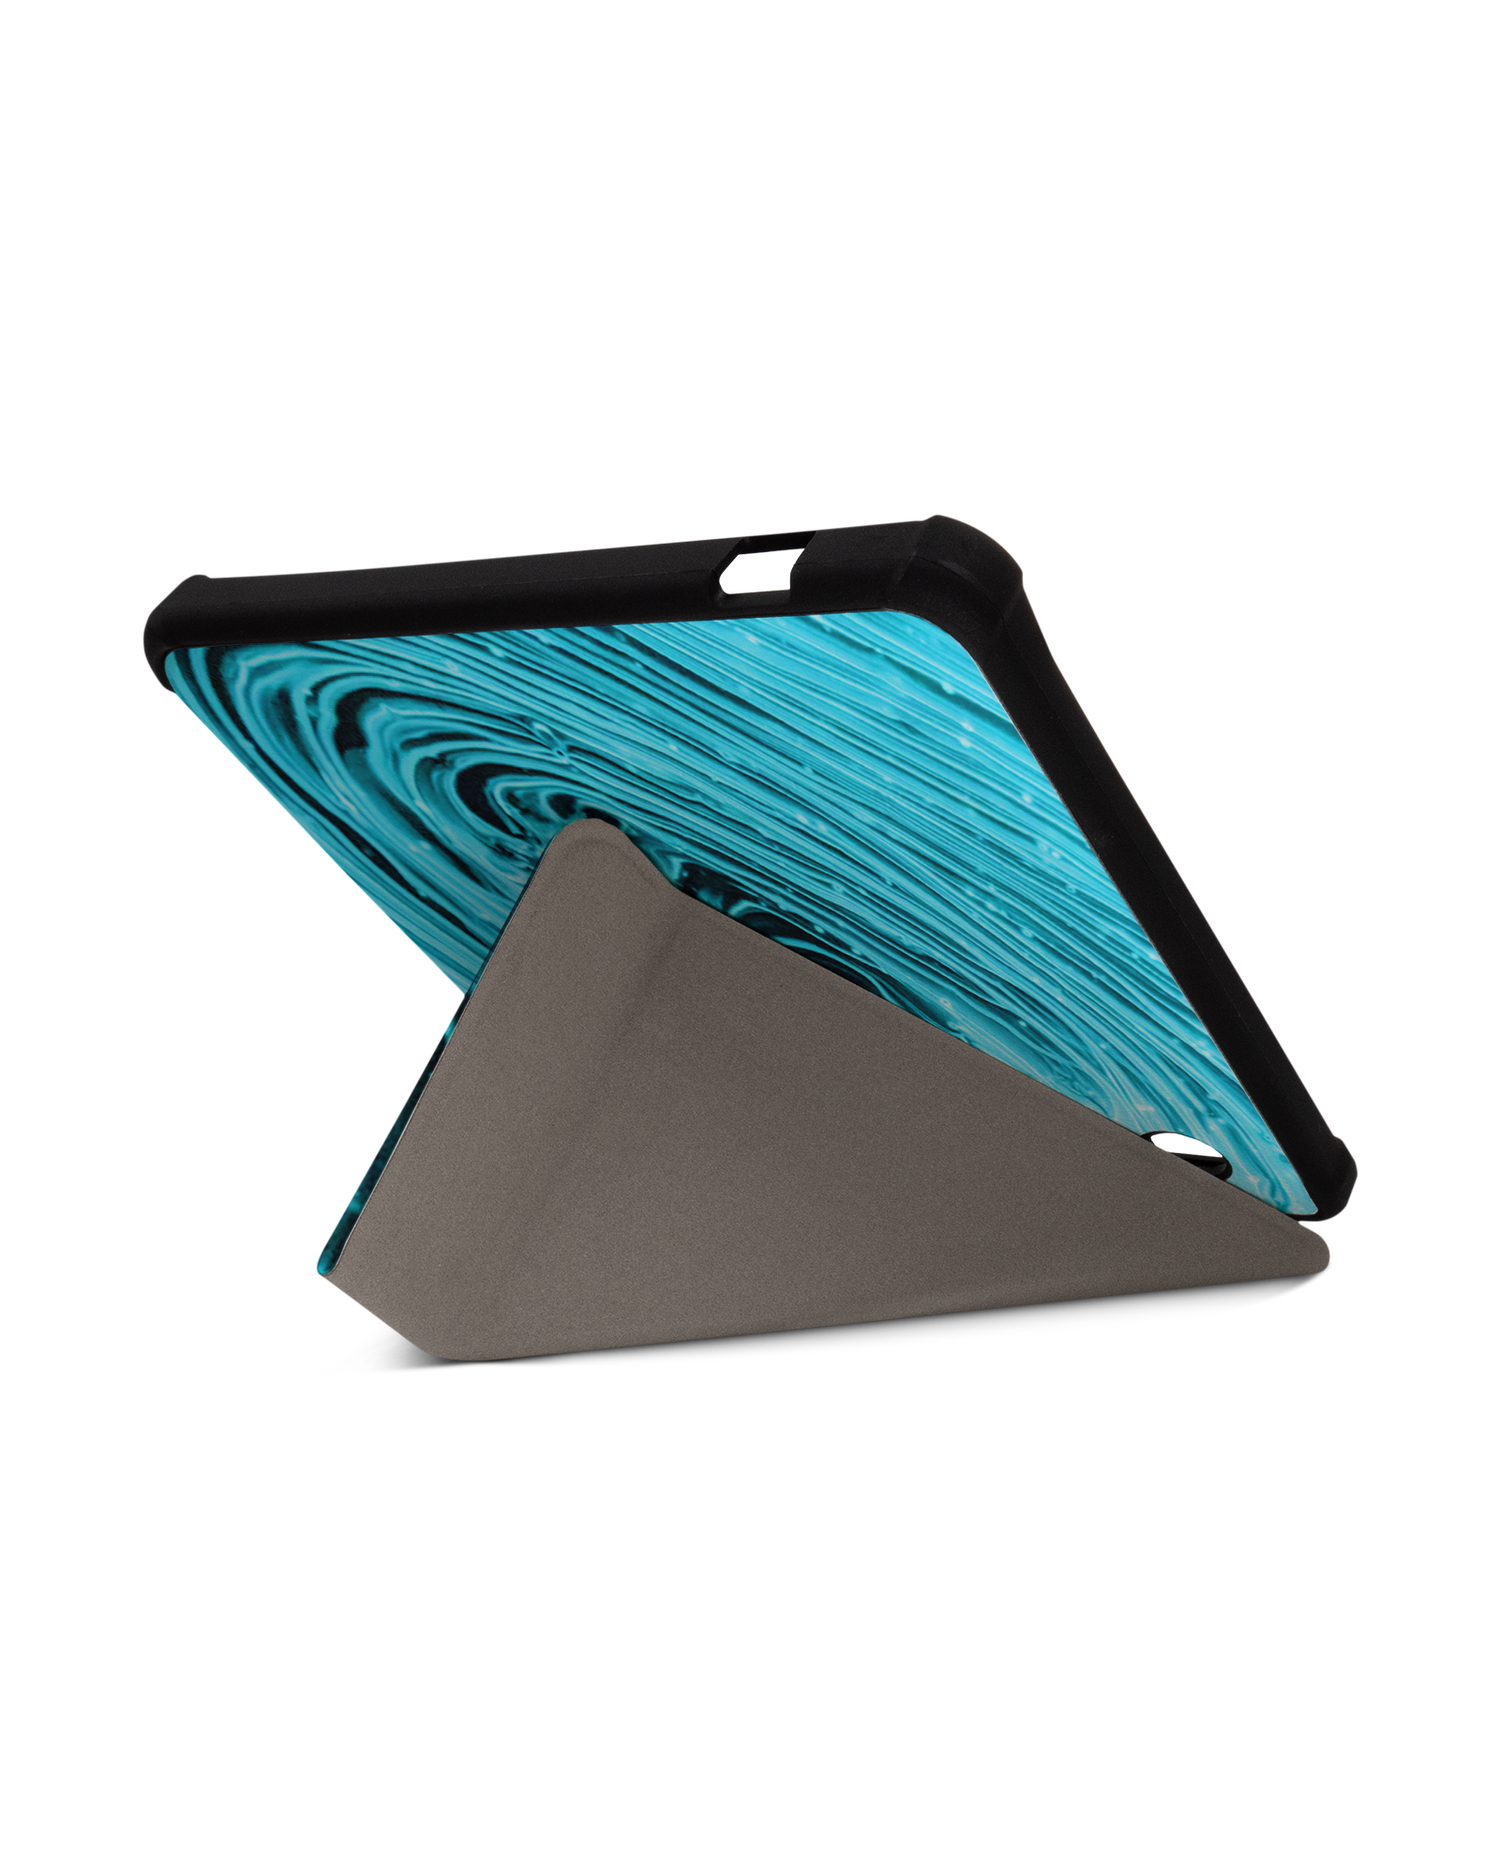 Turquoise Ripples eBook-Reader Smart Case für tolino vision 5 (2019): Aufgestellt im Querformat